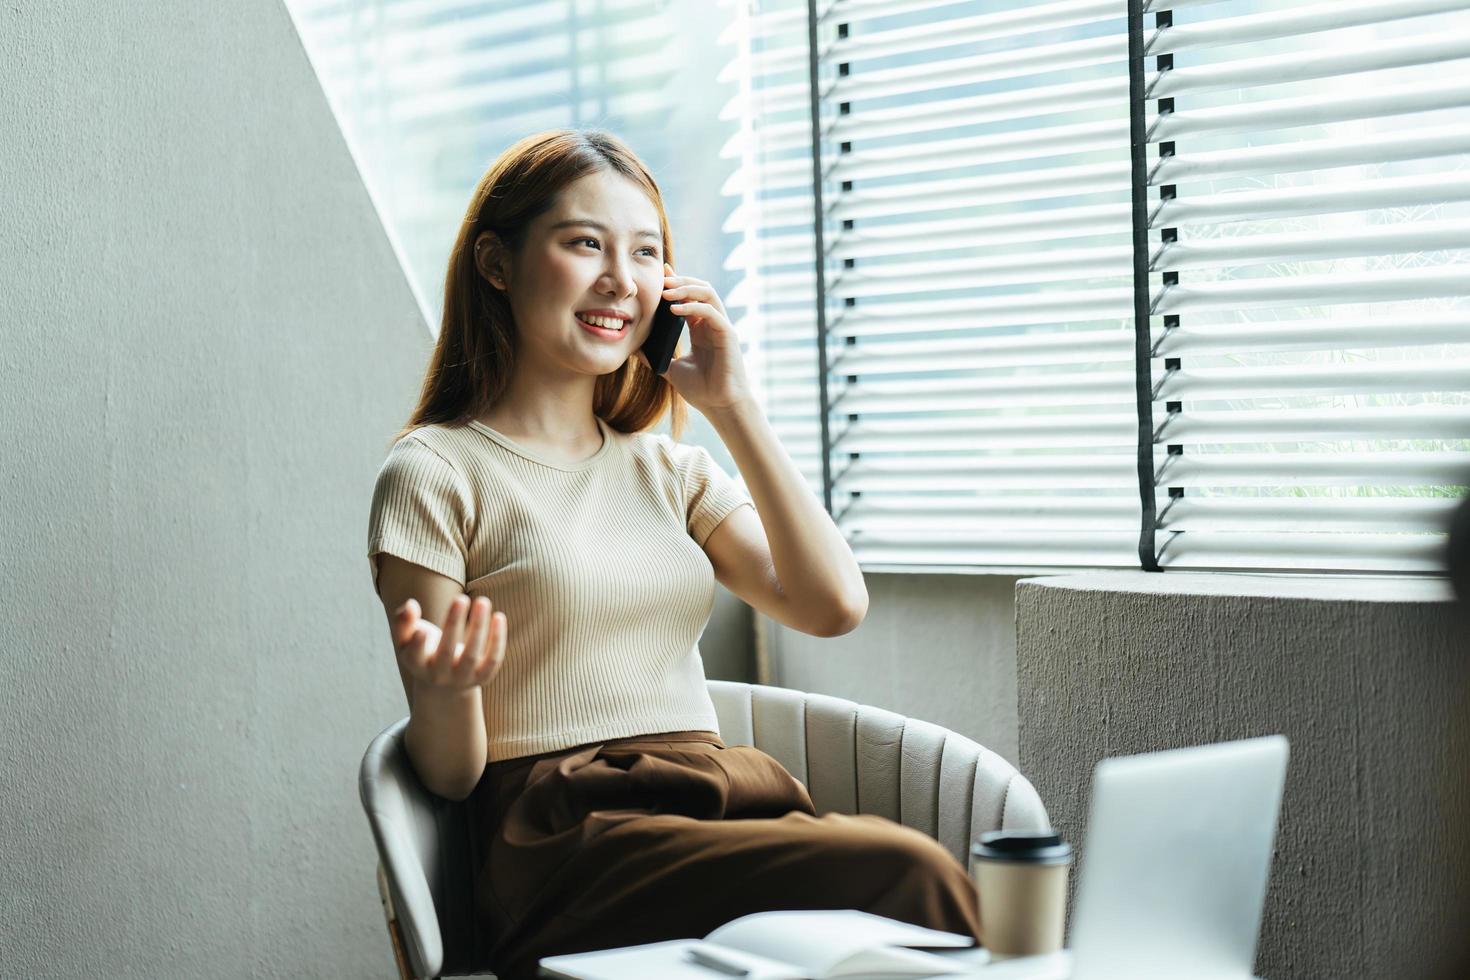 asiatische frau in lässiger kleidung ist glücklich und fröhlich, während sie mit ihrem smartphone kommuniziert und in einem café arbeitet. foto